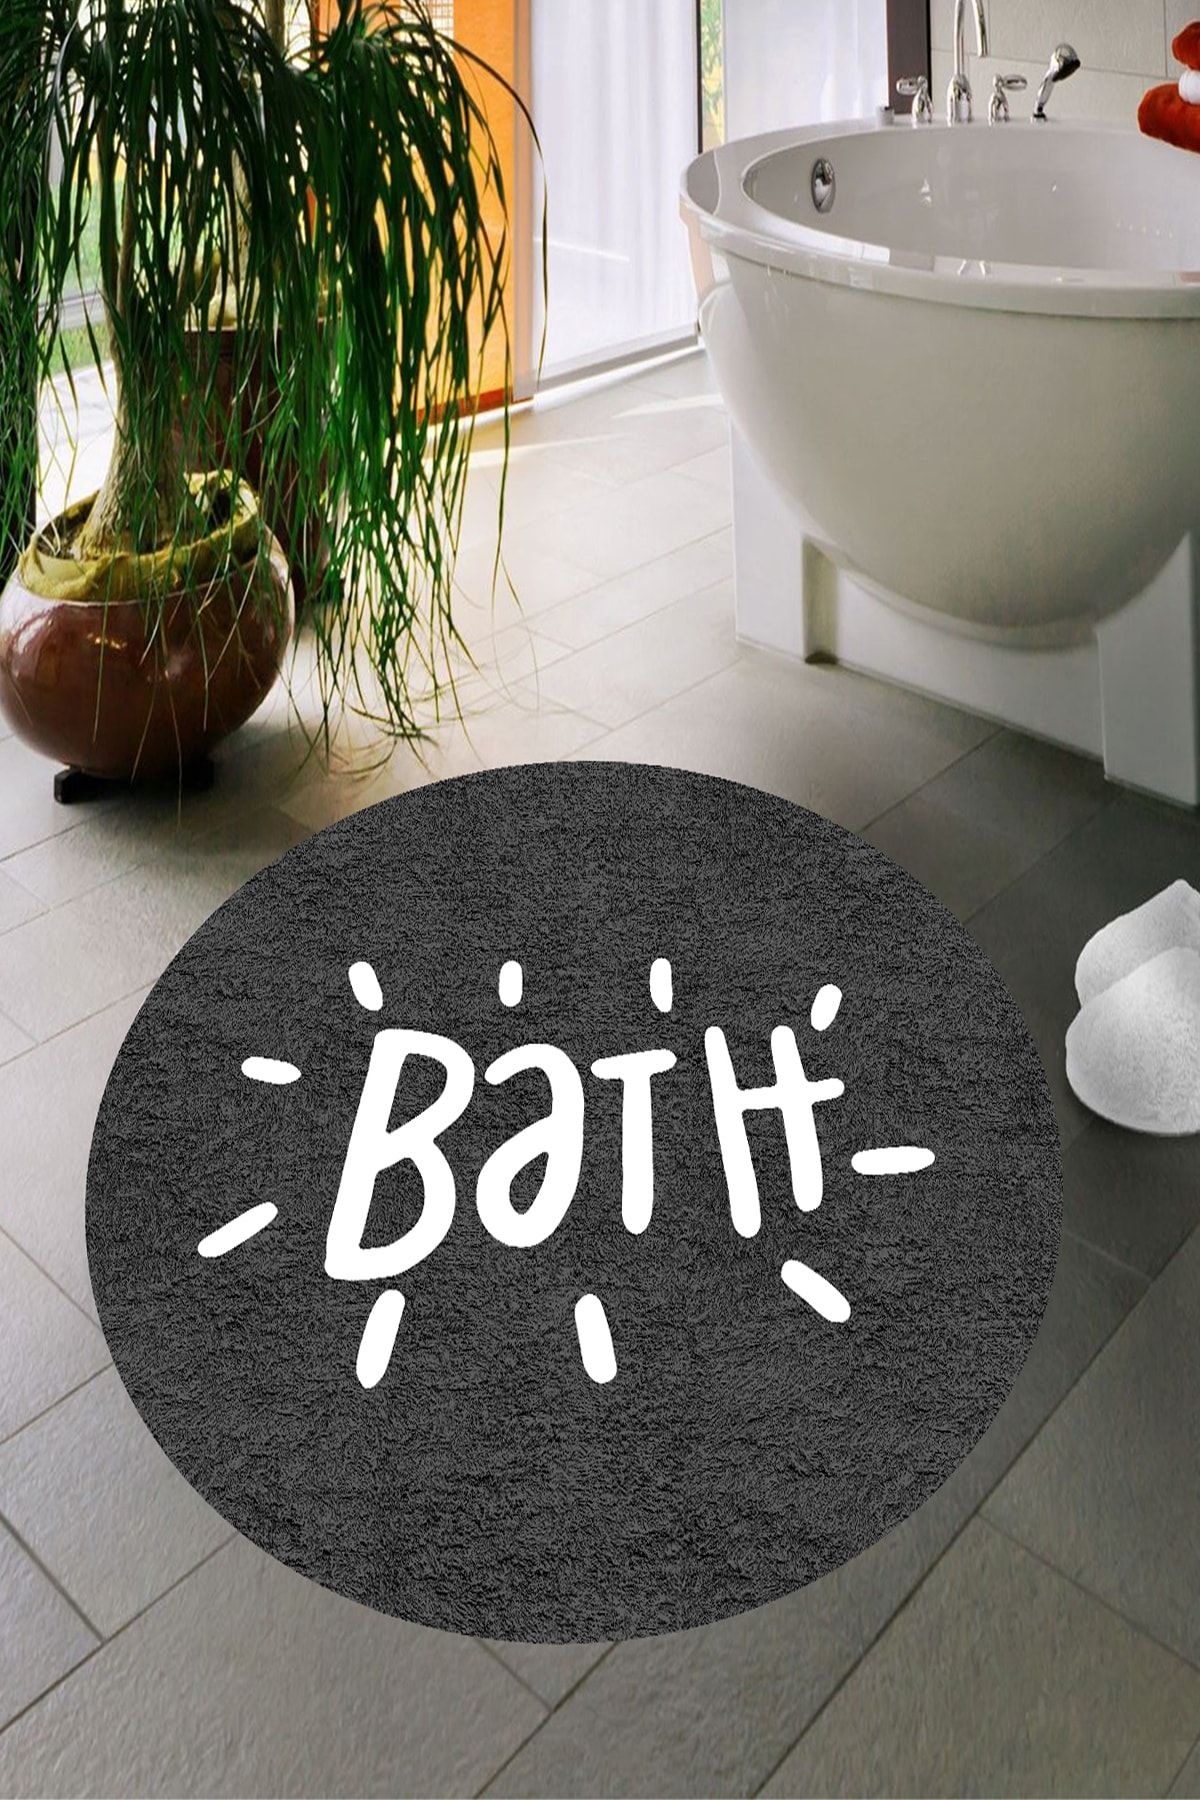 Decomia Home Dijital Baskı Kaymaz Taban Yıkanabilir Bath Yazılı Banyo Paspası Dc-8025 Koyu Gri